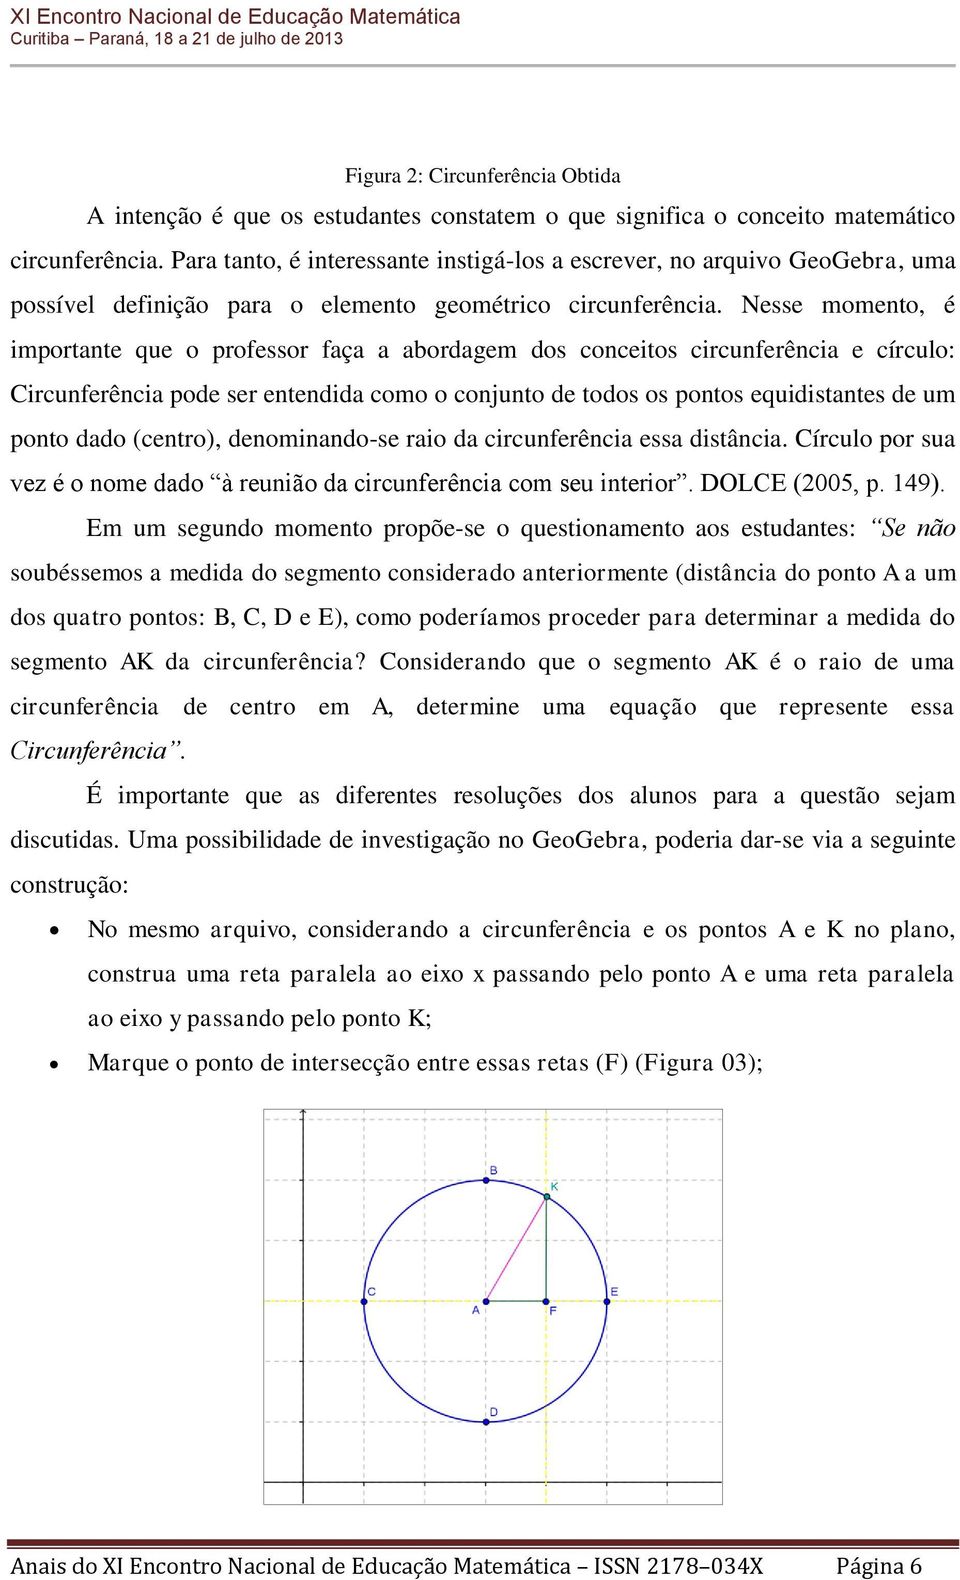 Nesse momento, é importante que o professor faça a abordagem dos conceitos circunferência e círculo: Circunferência pode ser entendida como o conjunto de todos os pontos equidistantes de um ponto